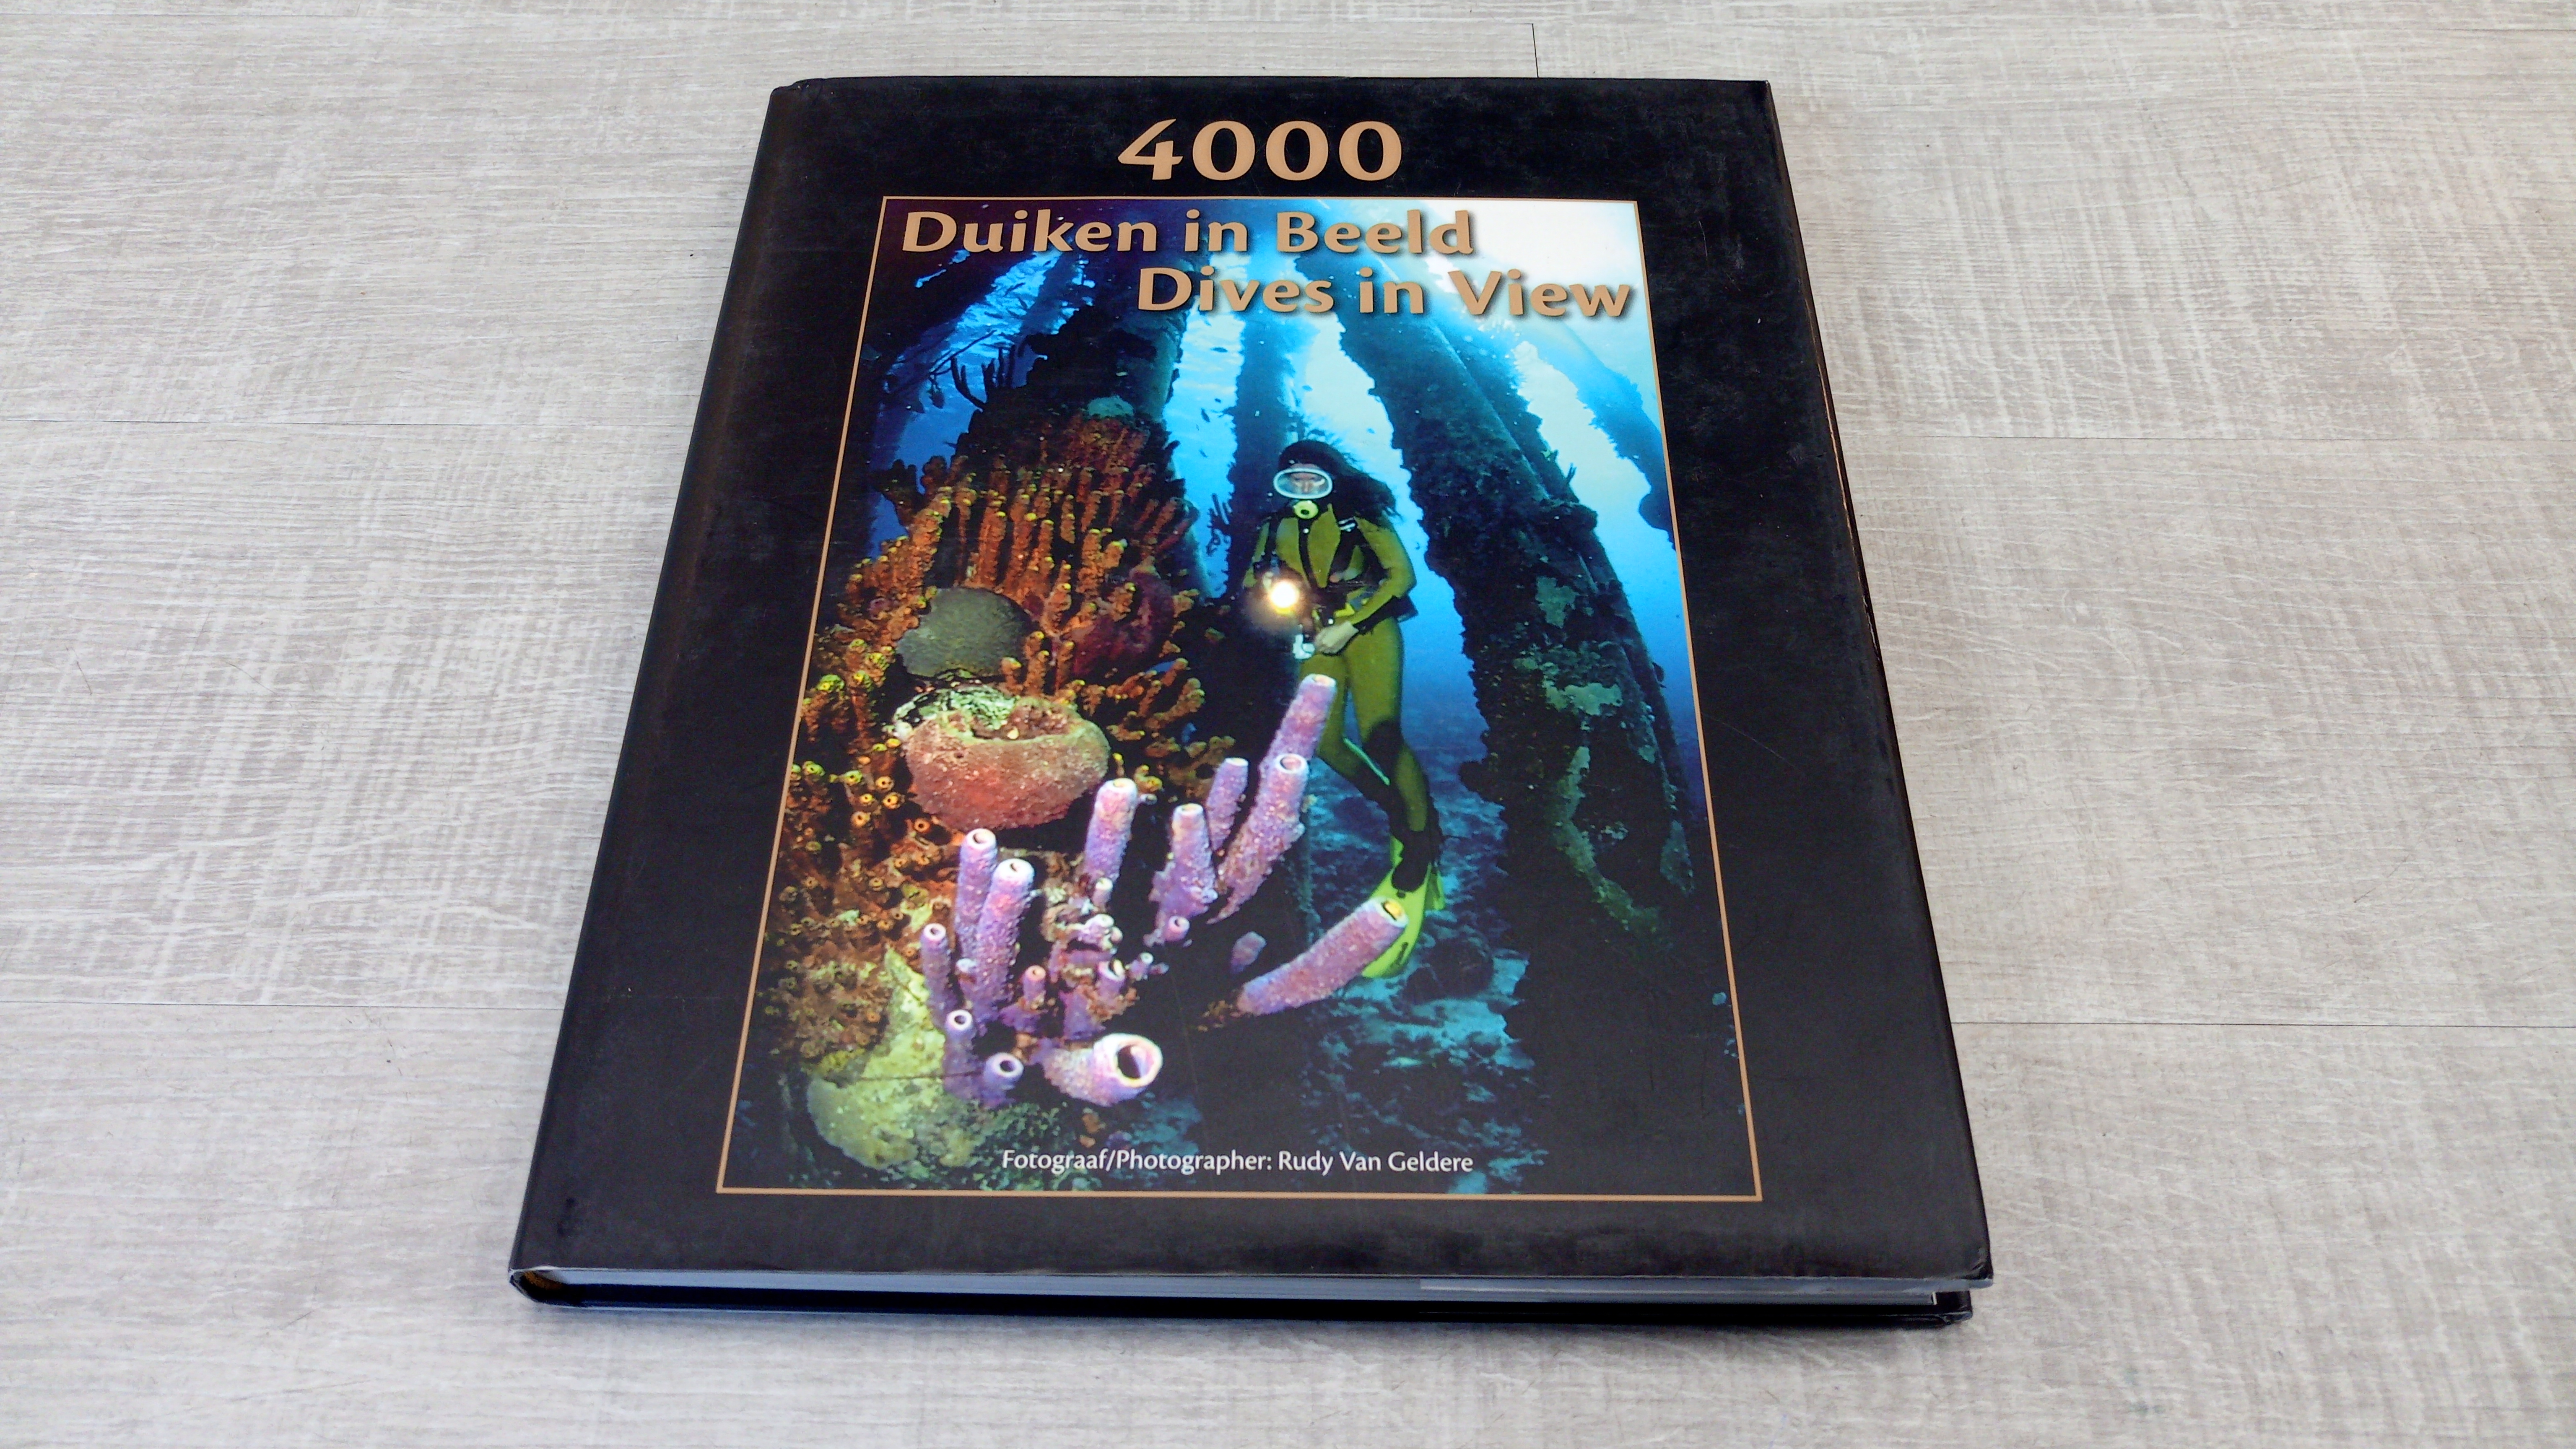 4000 Duiken in Beeld (4000 Dives in View)